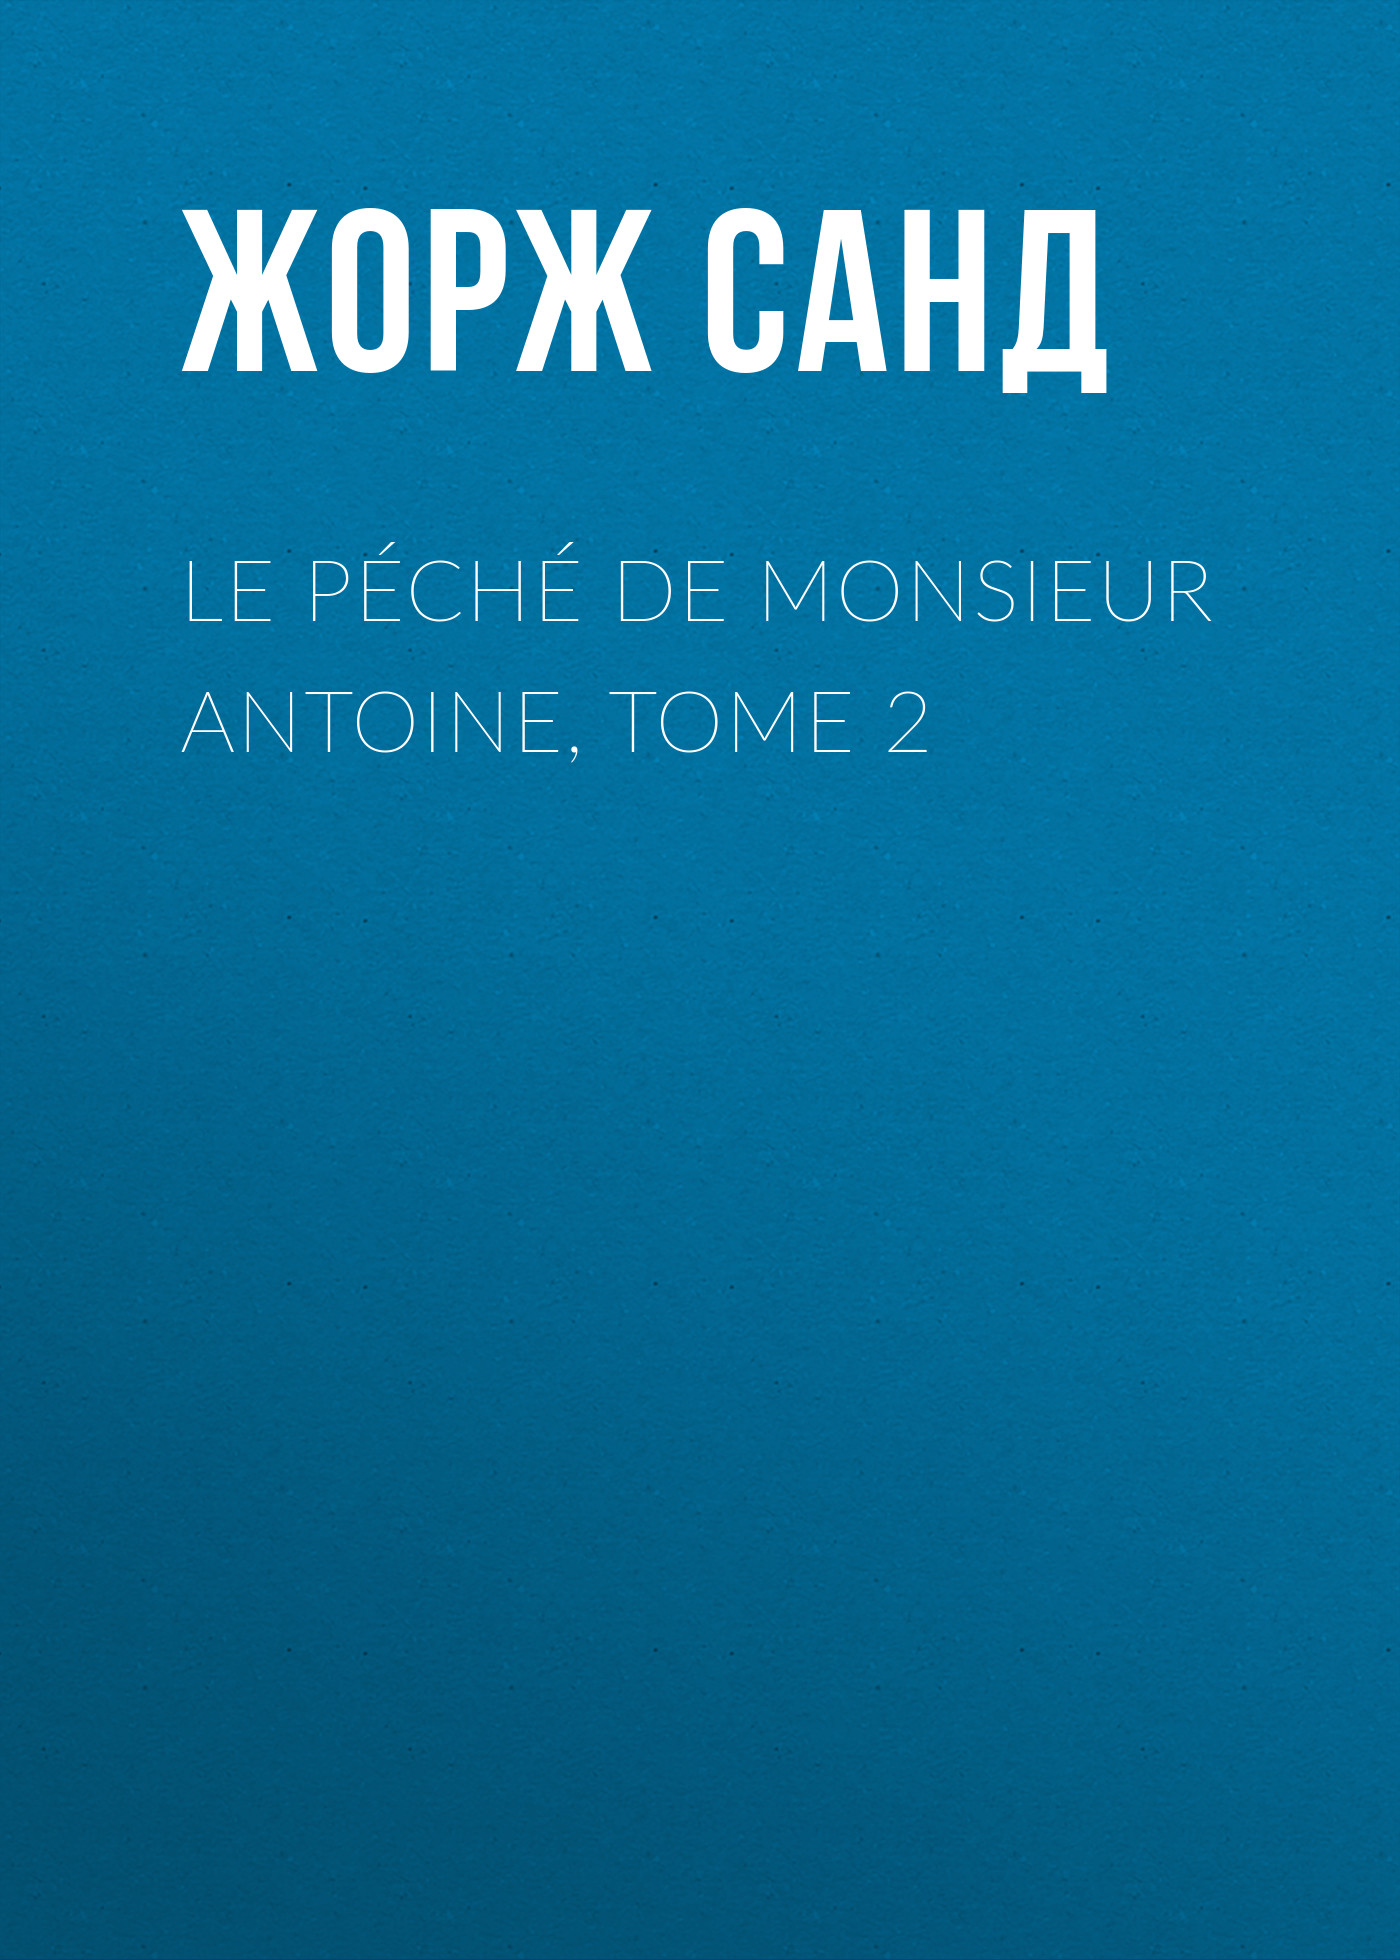 Книга Le péché de Monsieur Antoine, Tome 2 из серии , созданная Жорж Санд, может относится к жанру Литература 19 века, Зарубежная старинная литература, Зарубежная классика. Стоимость электронной книги Le péché de Monsieur Antoine, Tome 2 с идентификатором 25450804 составляет 0 руб.